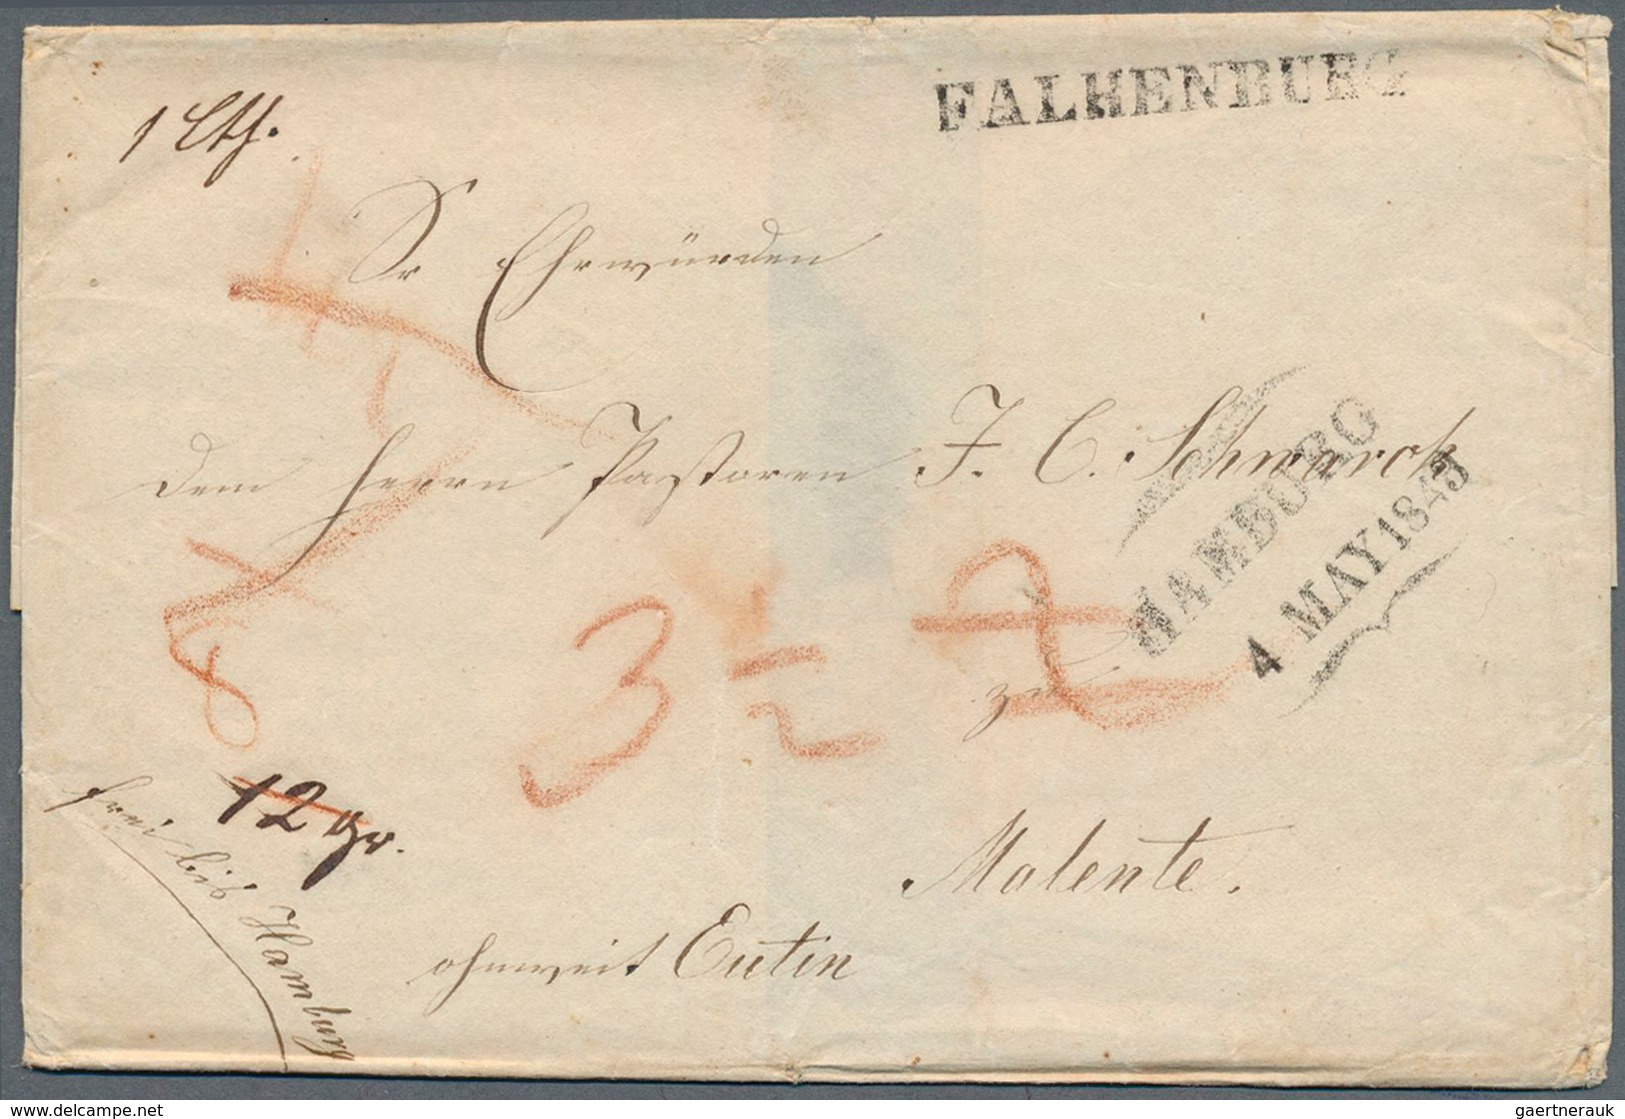 Oldenburg - Vorphilatelie: "FALKENBURG" L1 Auf 1843 Faltbriefhülle Nach Malente, Eutin (SCHLESWIG HO - Prefilatelia